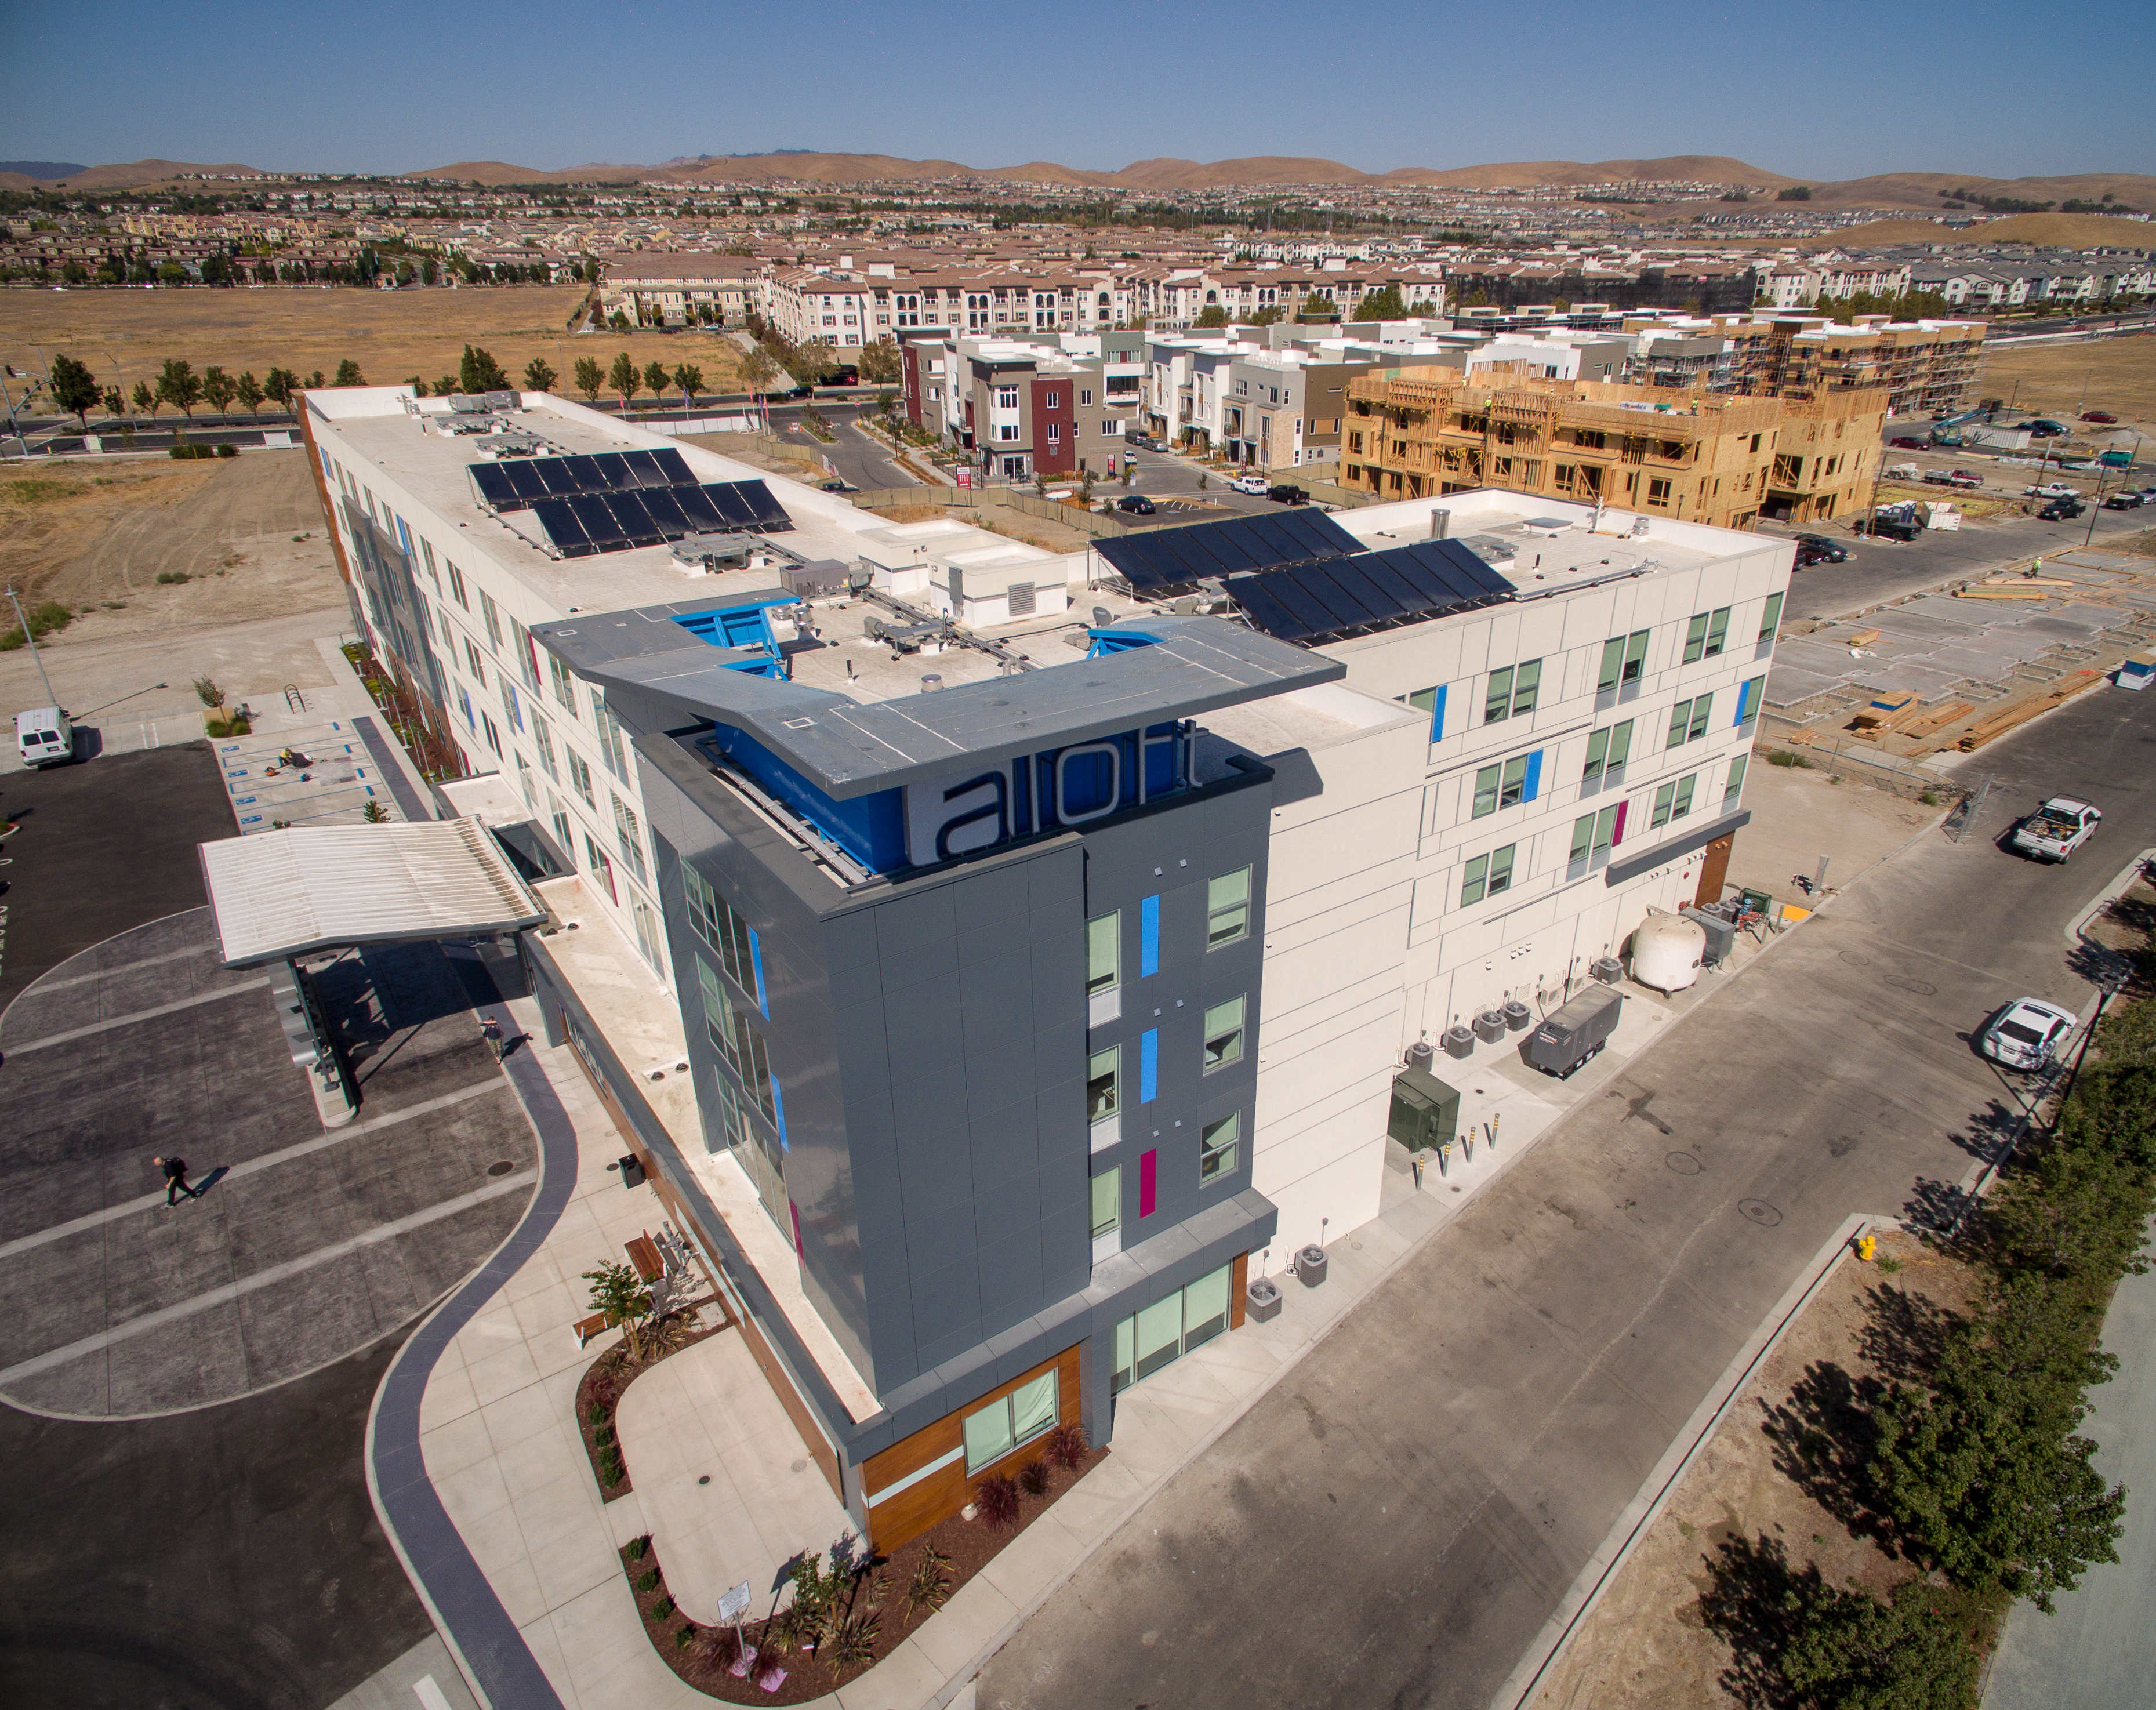 Aloft Hotel Solar Installation